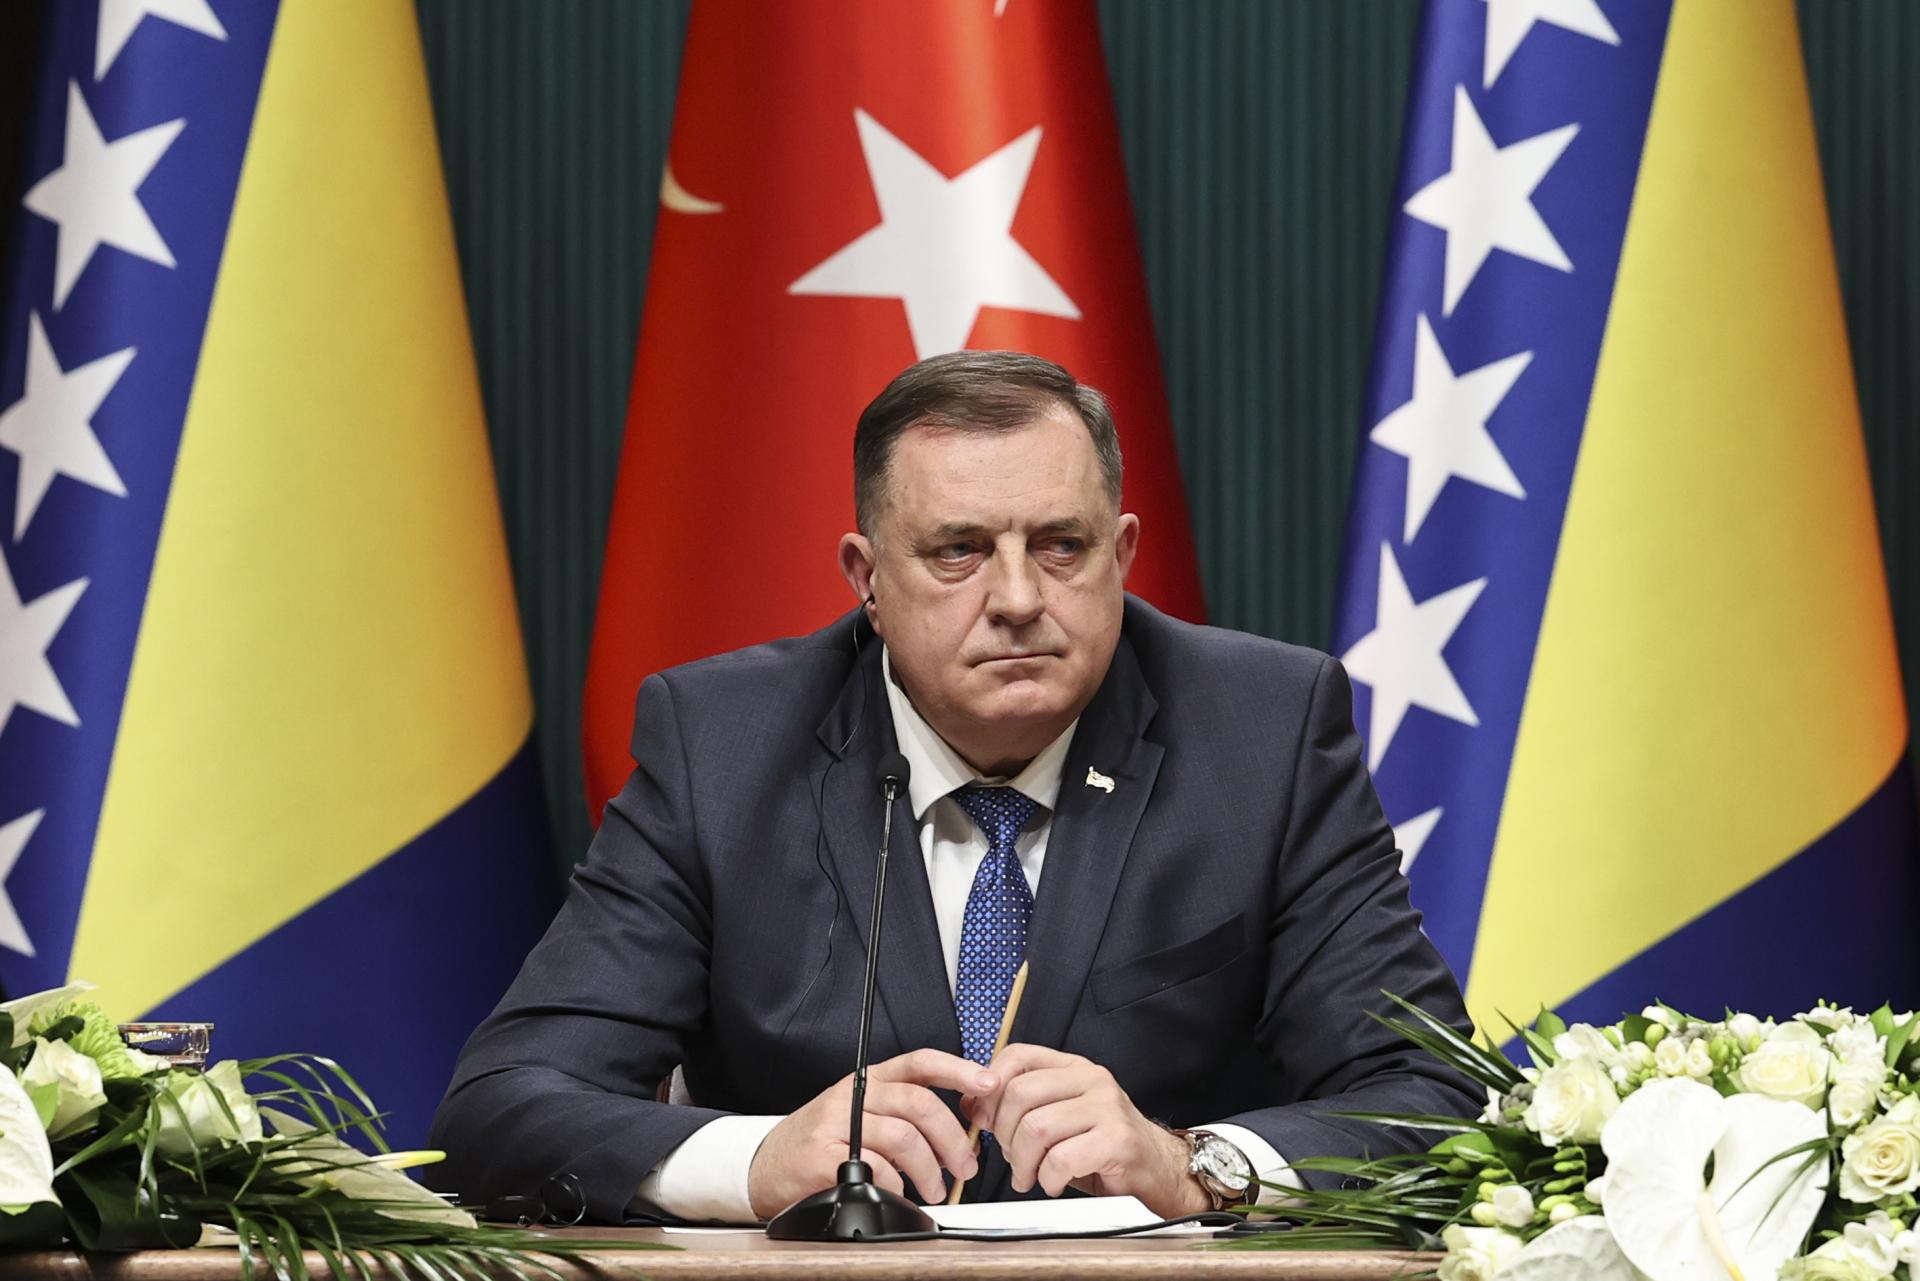 Ντόντικ: Ο Ερντογάν υποστηρίζει την εσωτερική συμφιλίωση στη Βοσνία-Ερζεγοβίνη